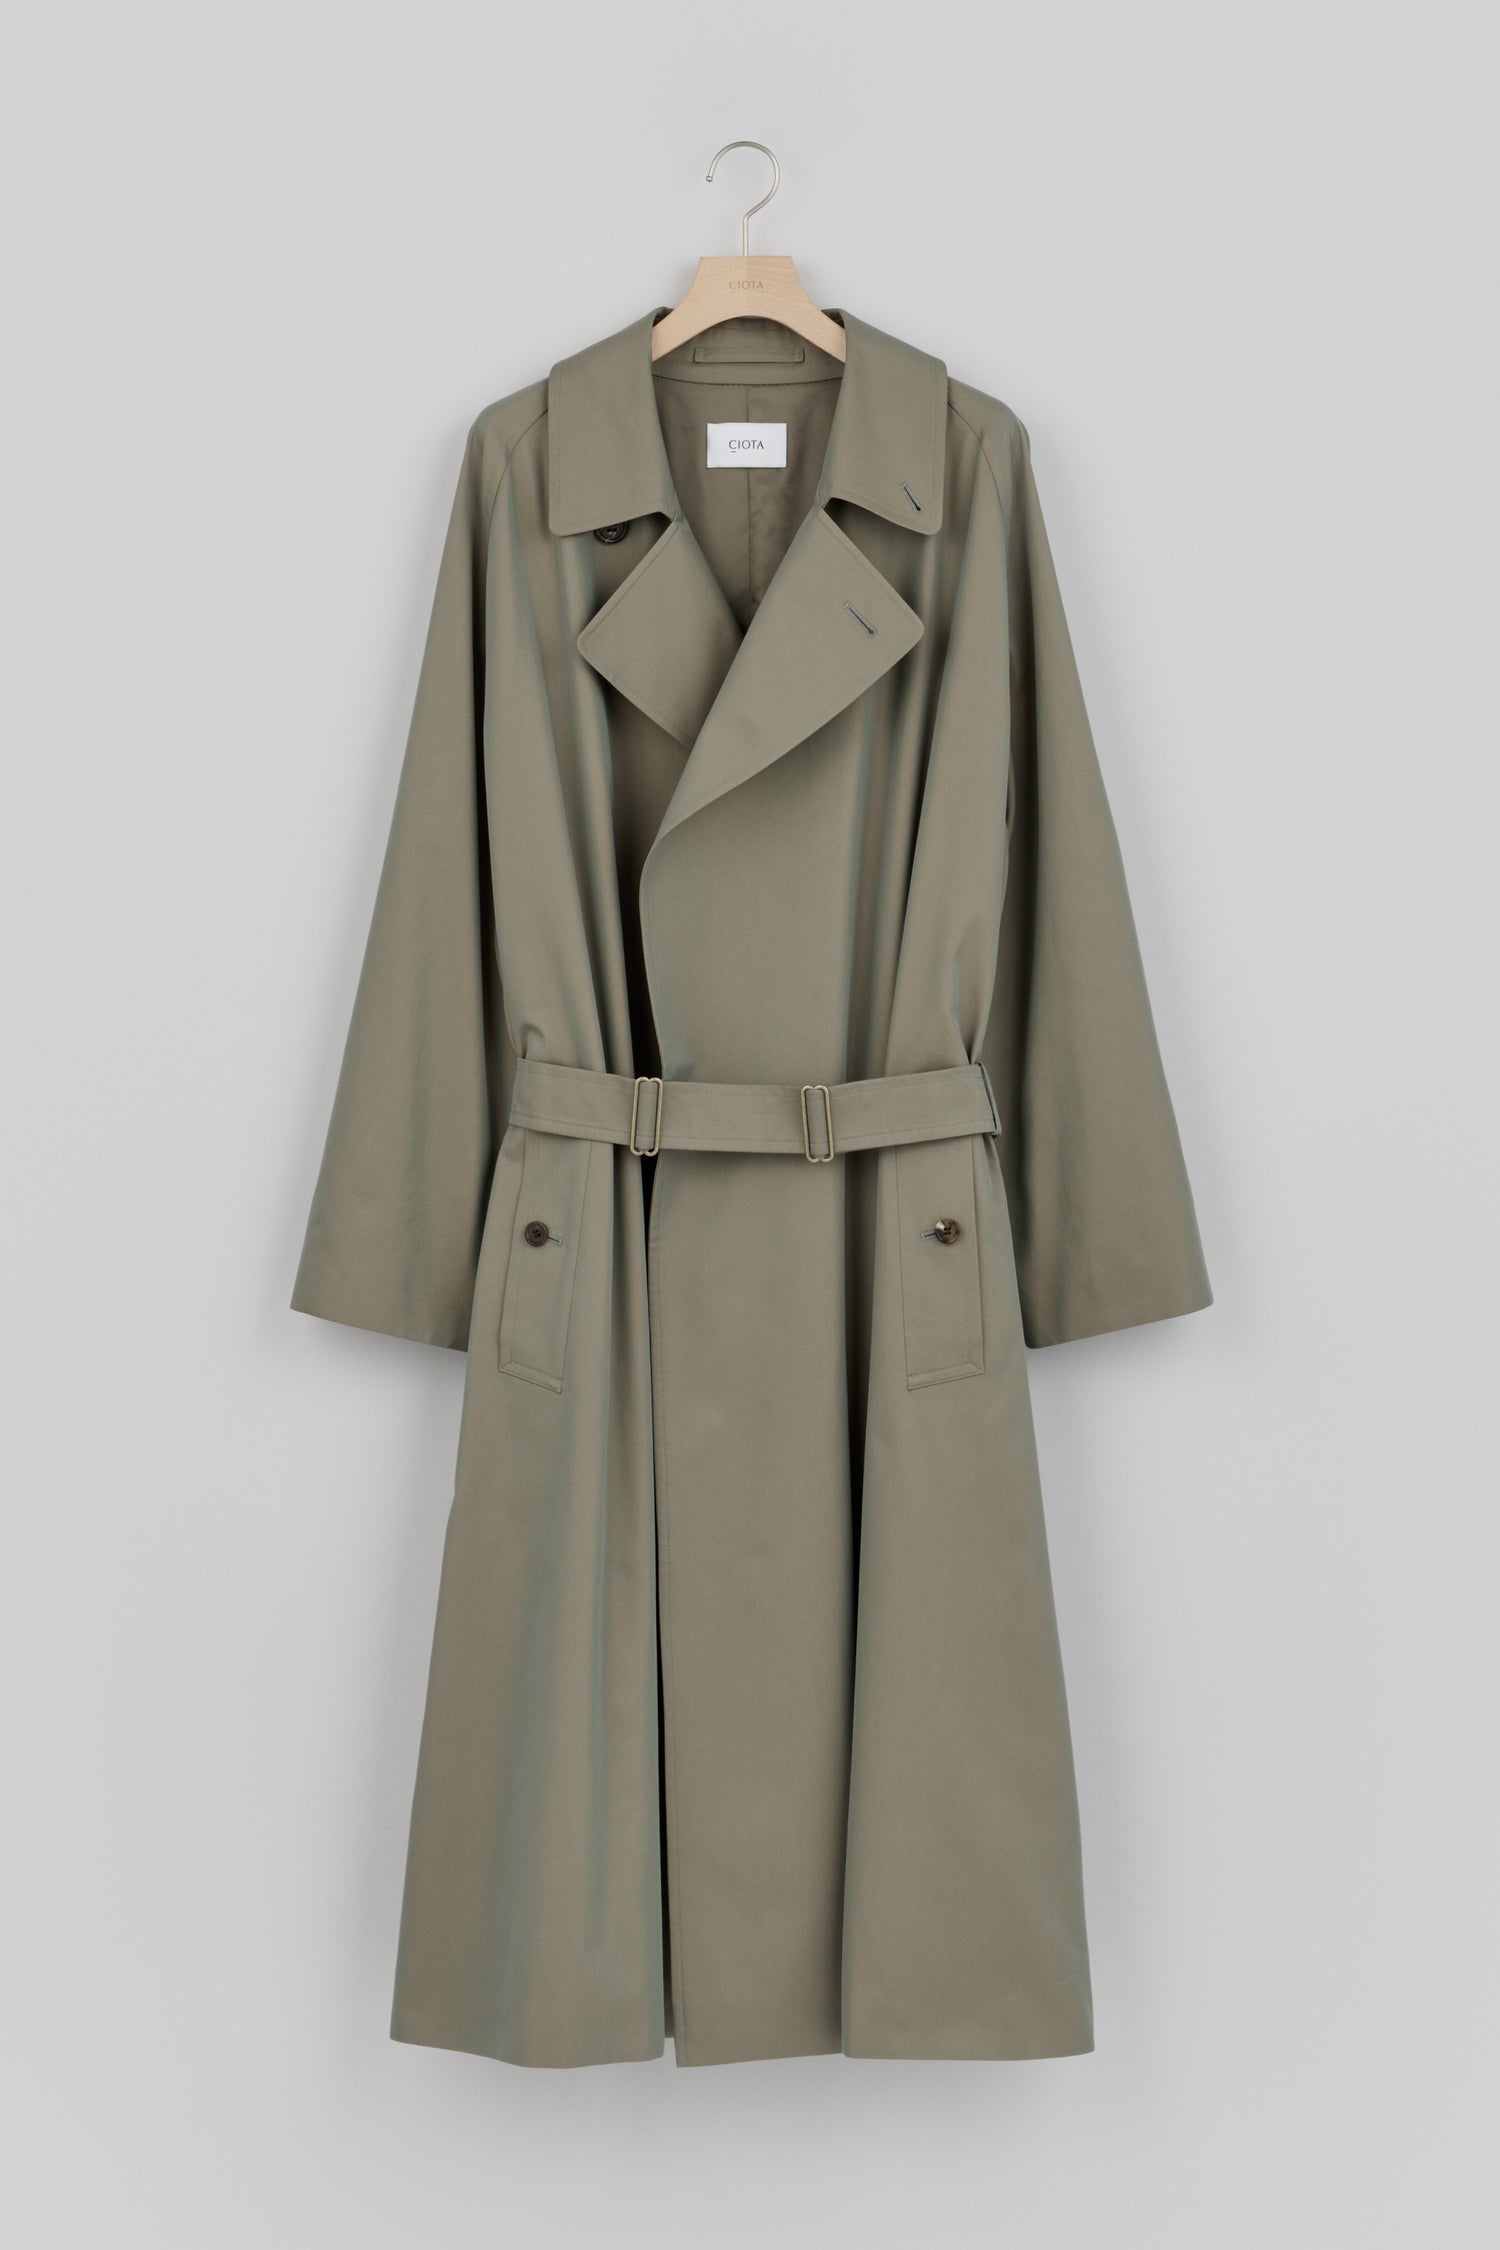 Tielocken Coat (Gabardine Fabric) – CIOTA Online Shop